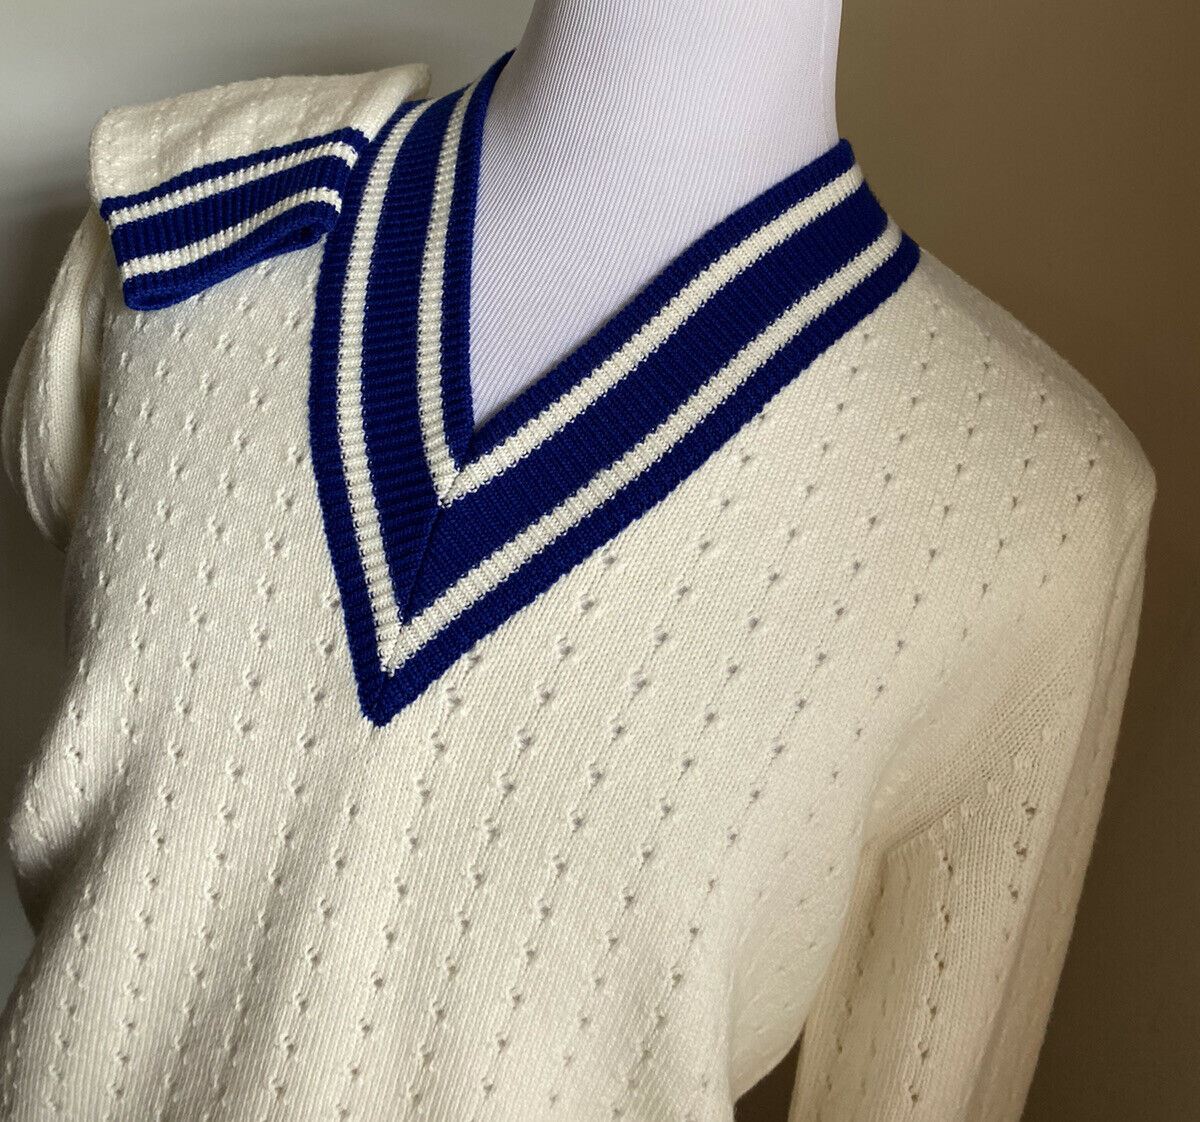 СЗТ $1320 Gucci Мужской шерстяной свитер с V-образным вырезом Цвет Белый/Молочный/Синий L Италия